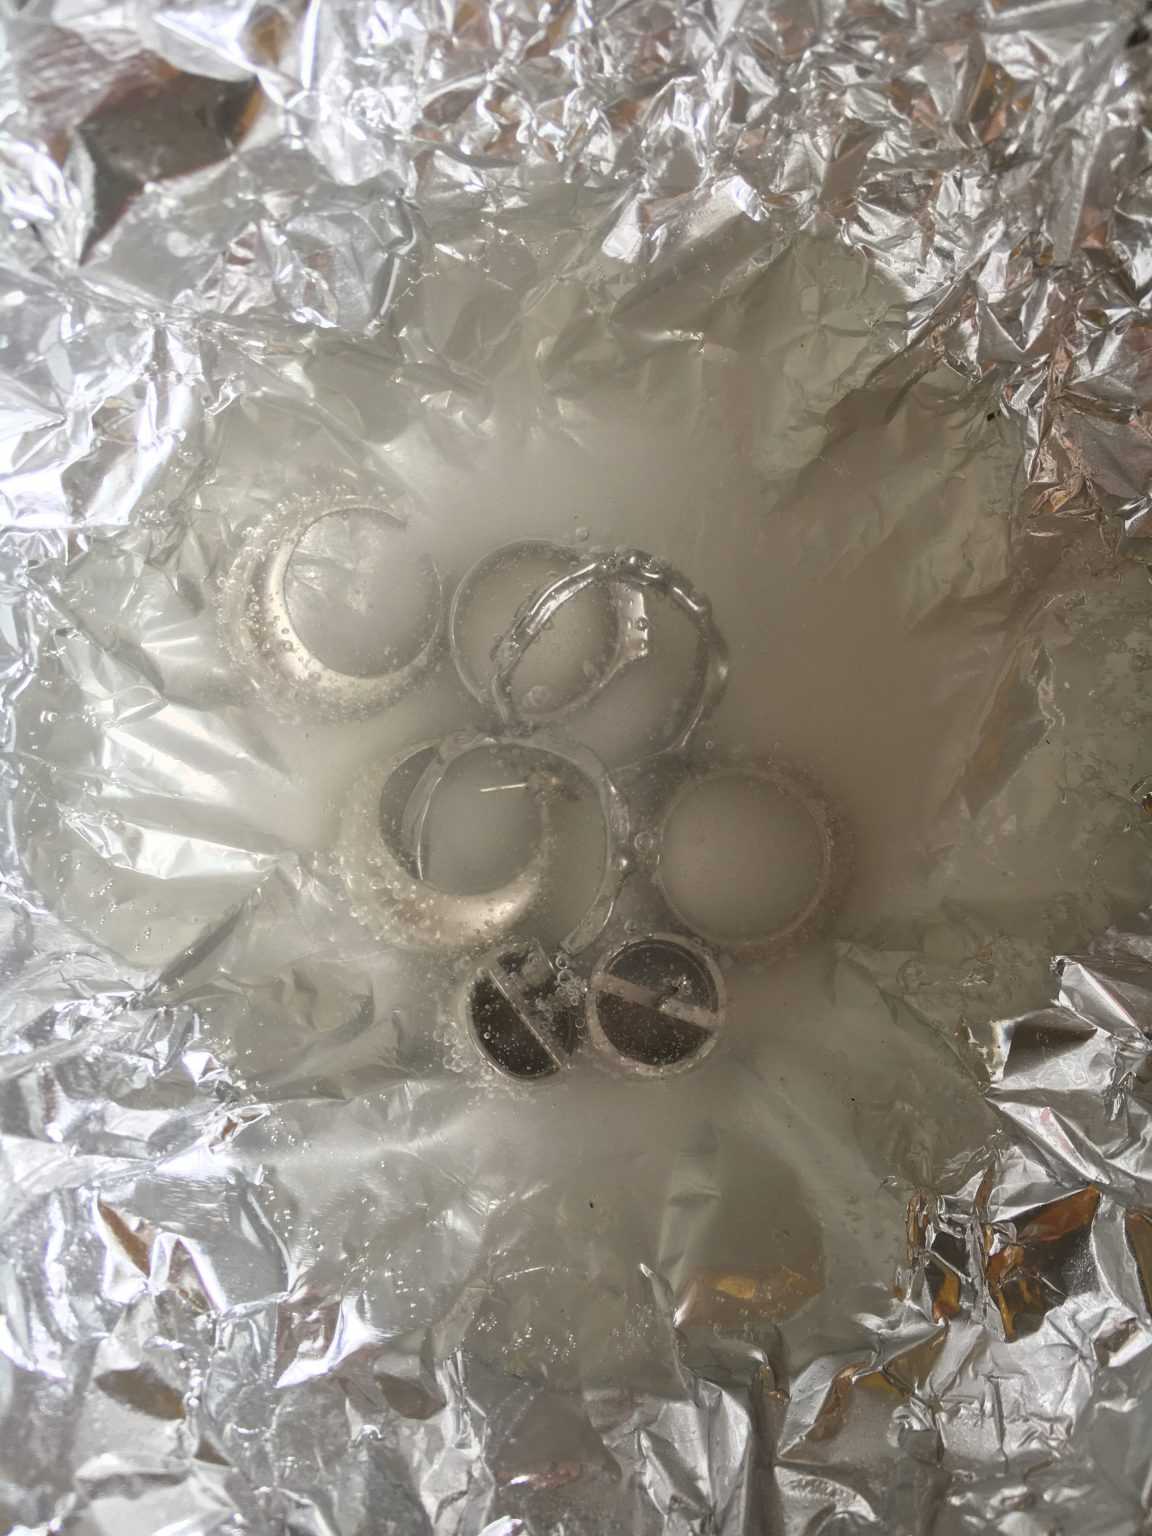 Как почистить серебро в домашних условиях: 10 простых способов